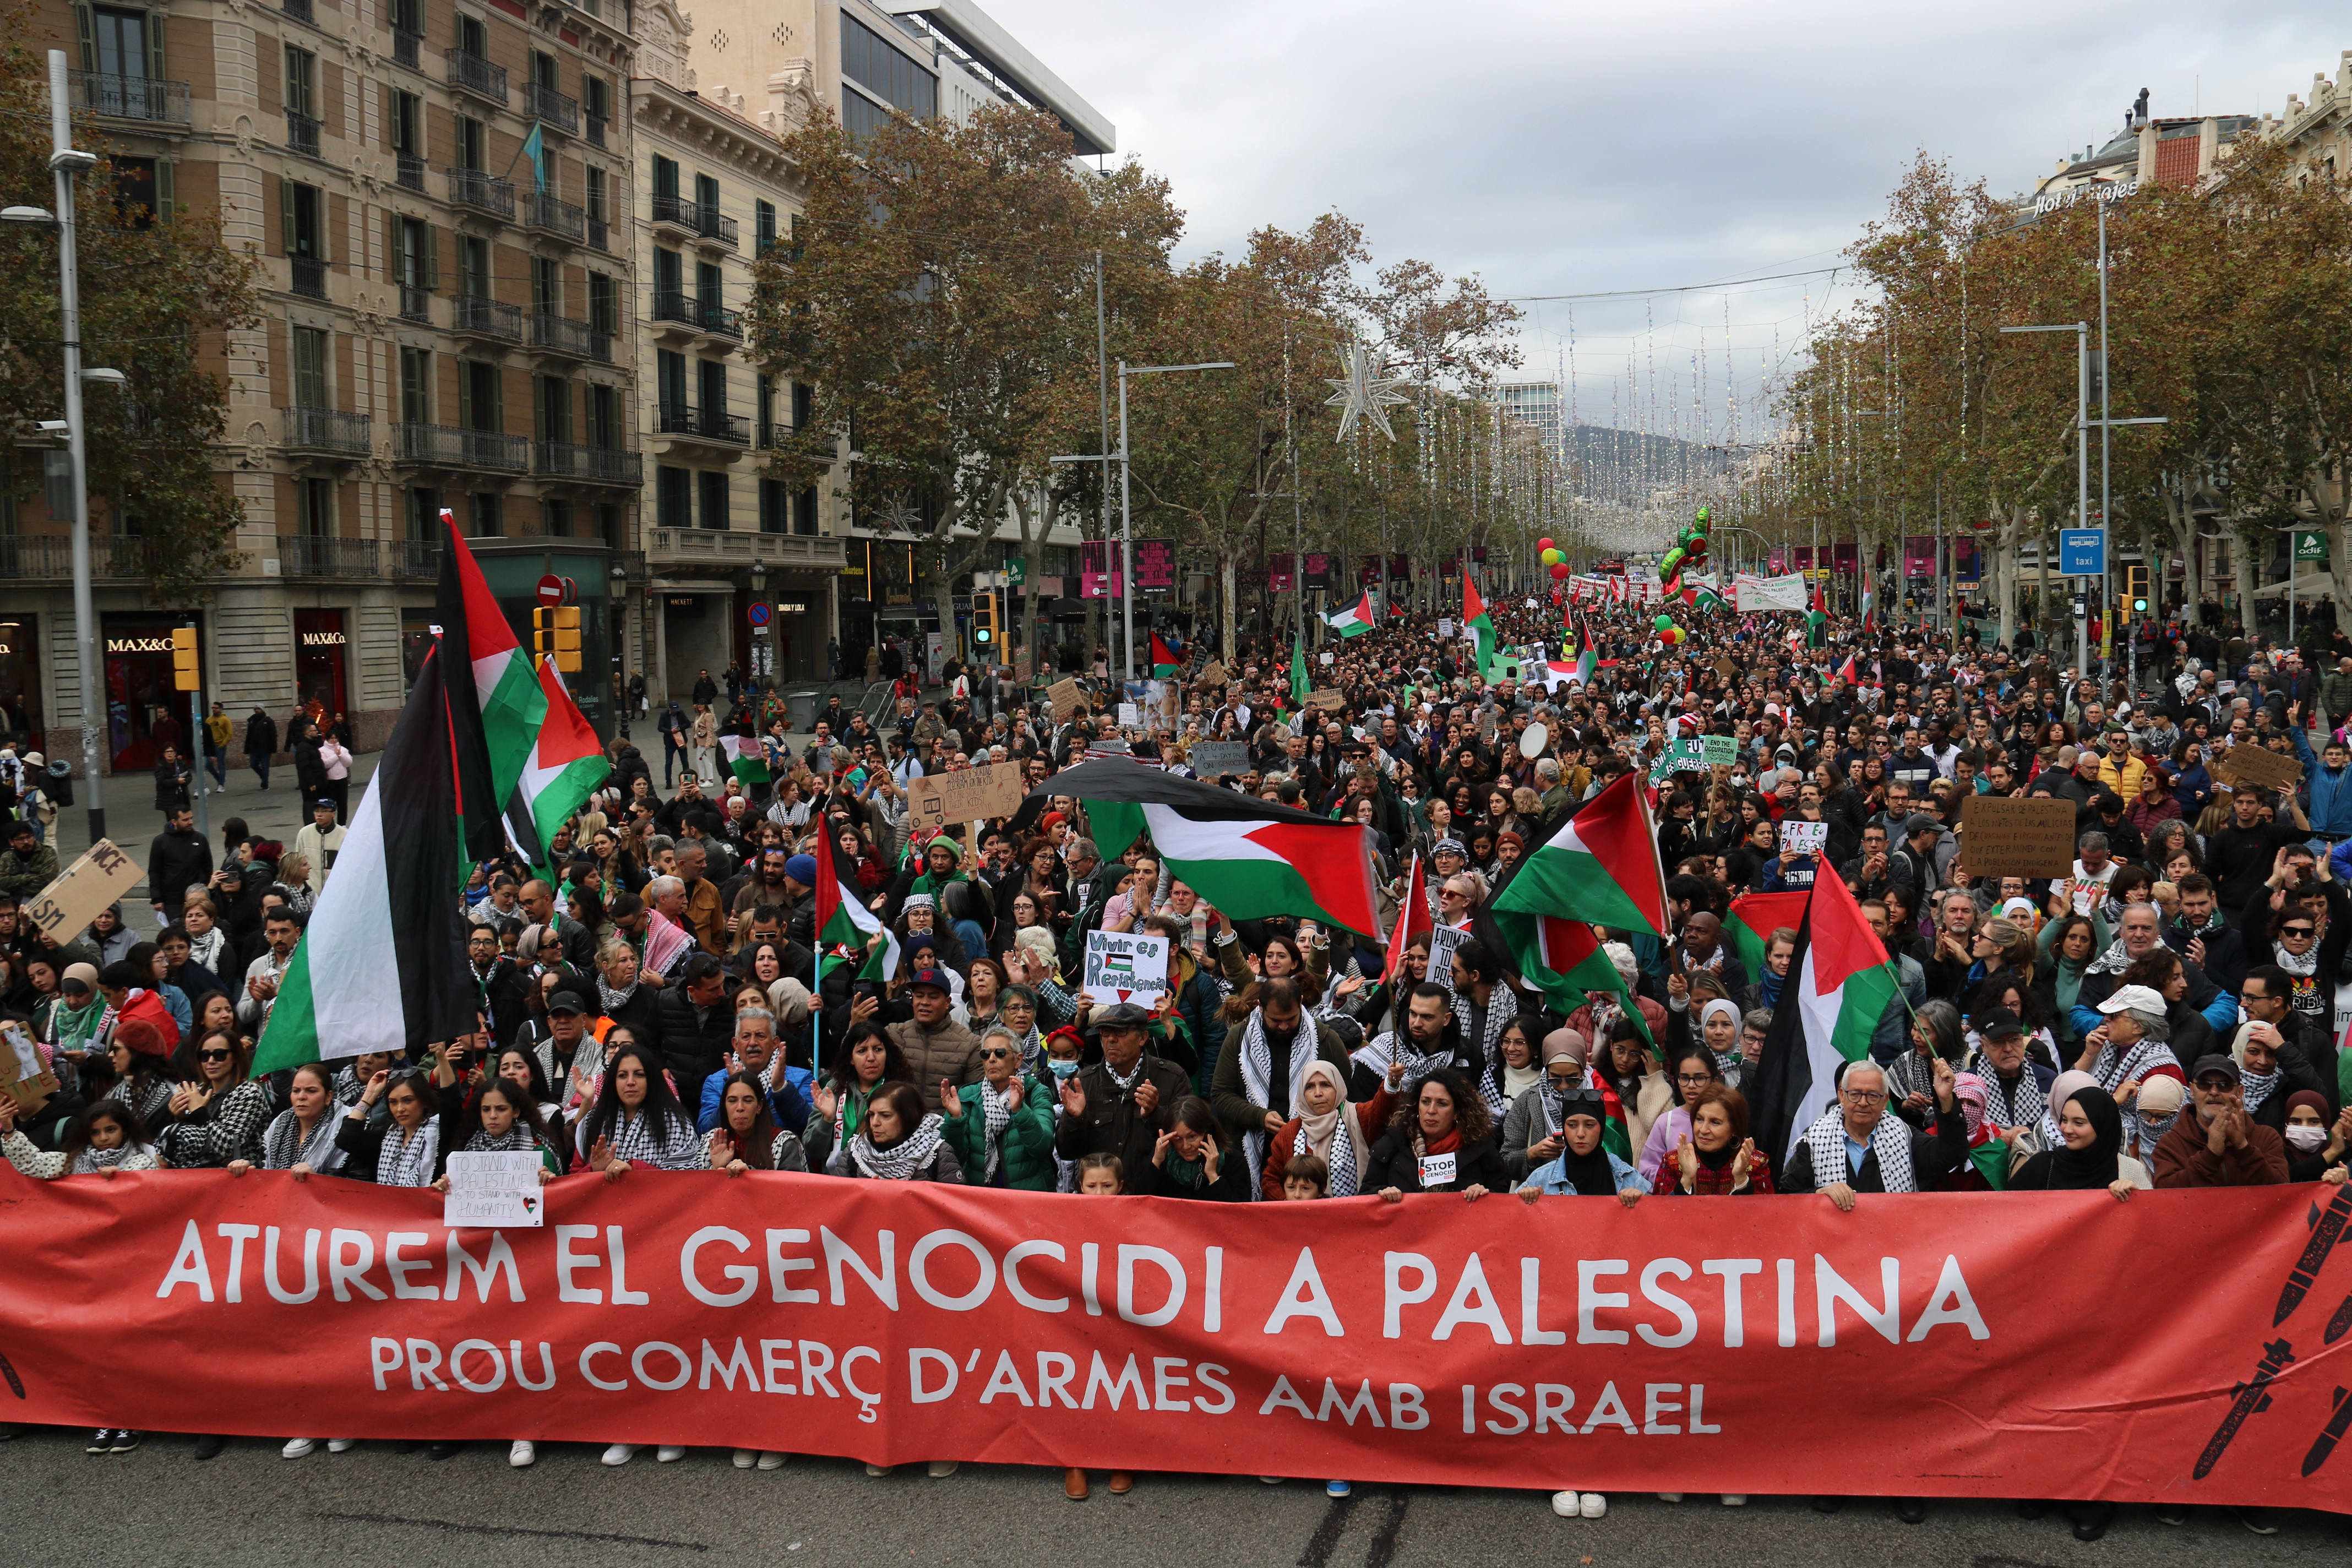 Més de 2.000 persones es manifesten a Barcelona per reclamar que "s'aturi el genocidi a Palestina"